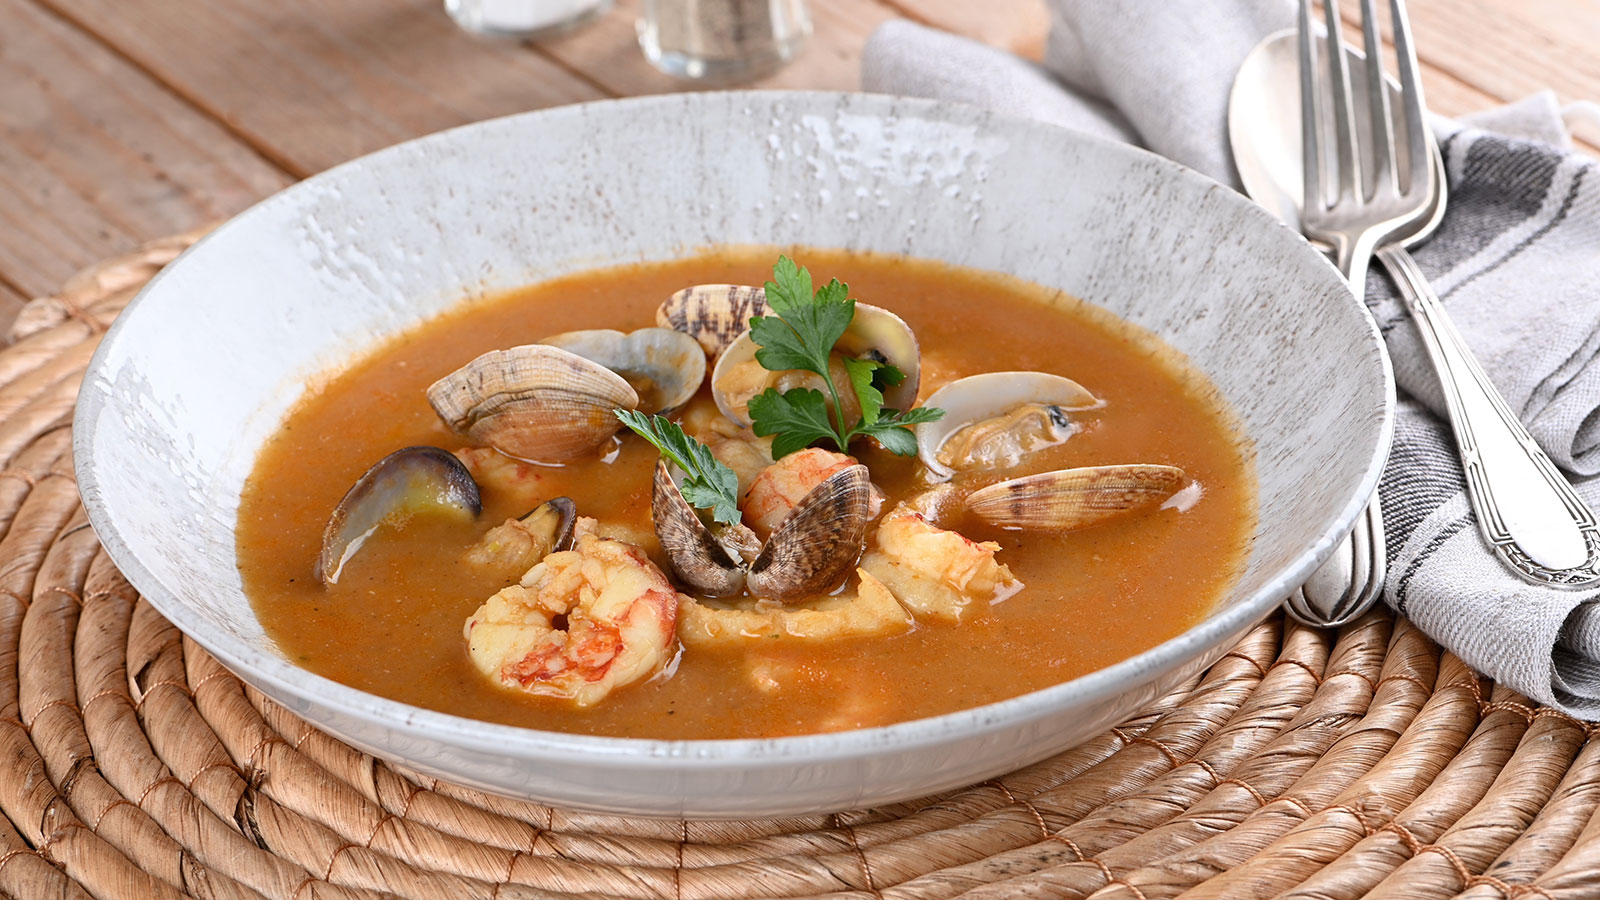 Sopa de pescado tradicional - Sergio Fernández - Receta - Canal Cocina